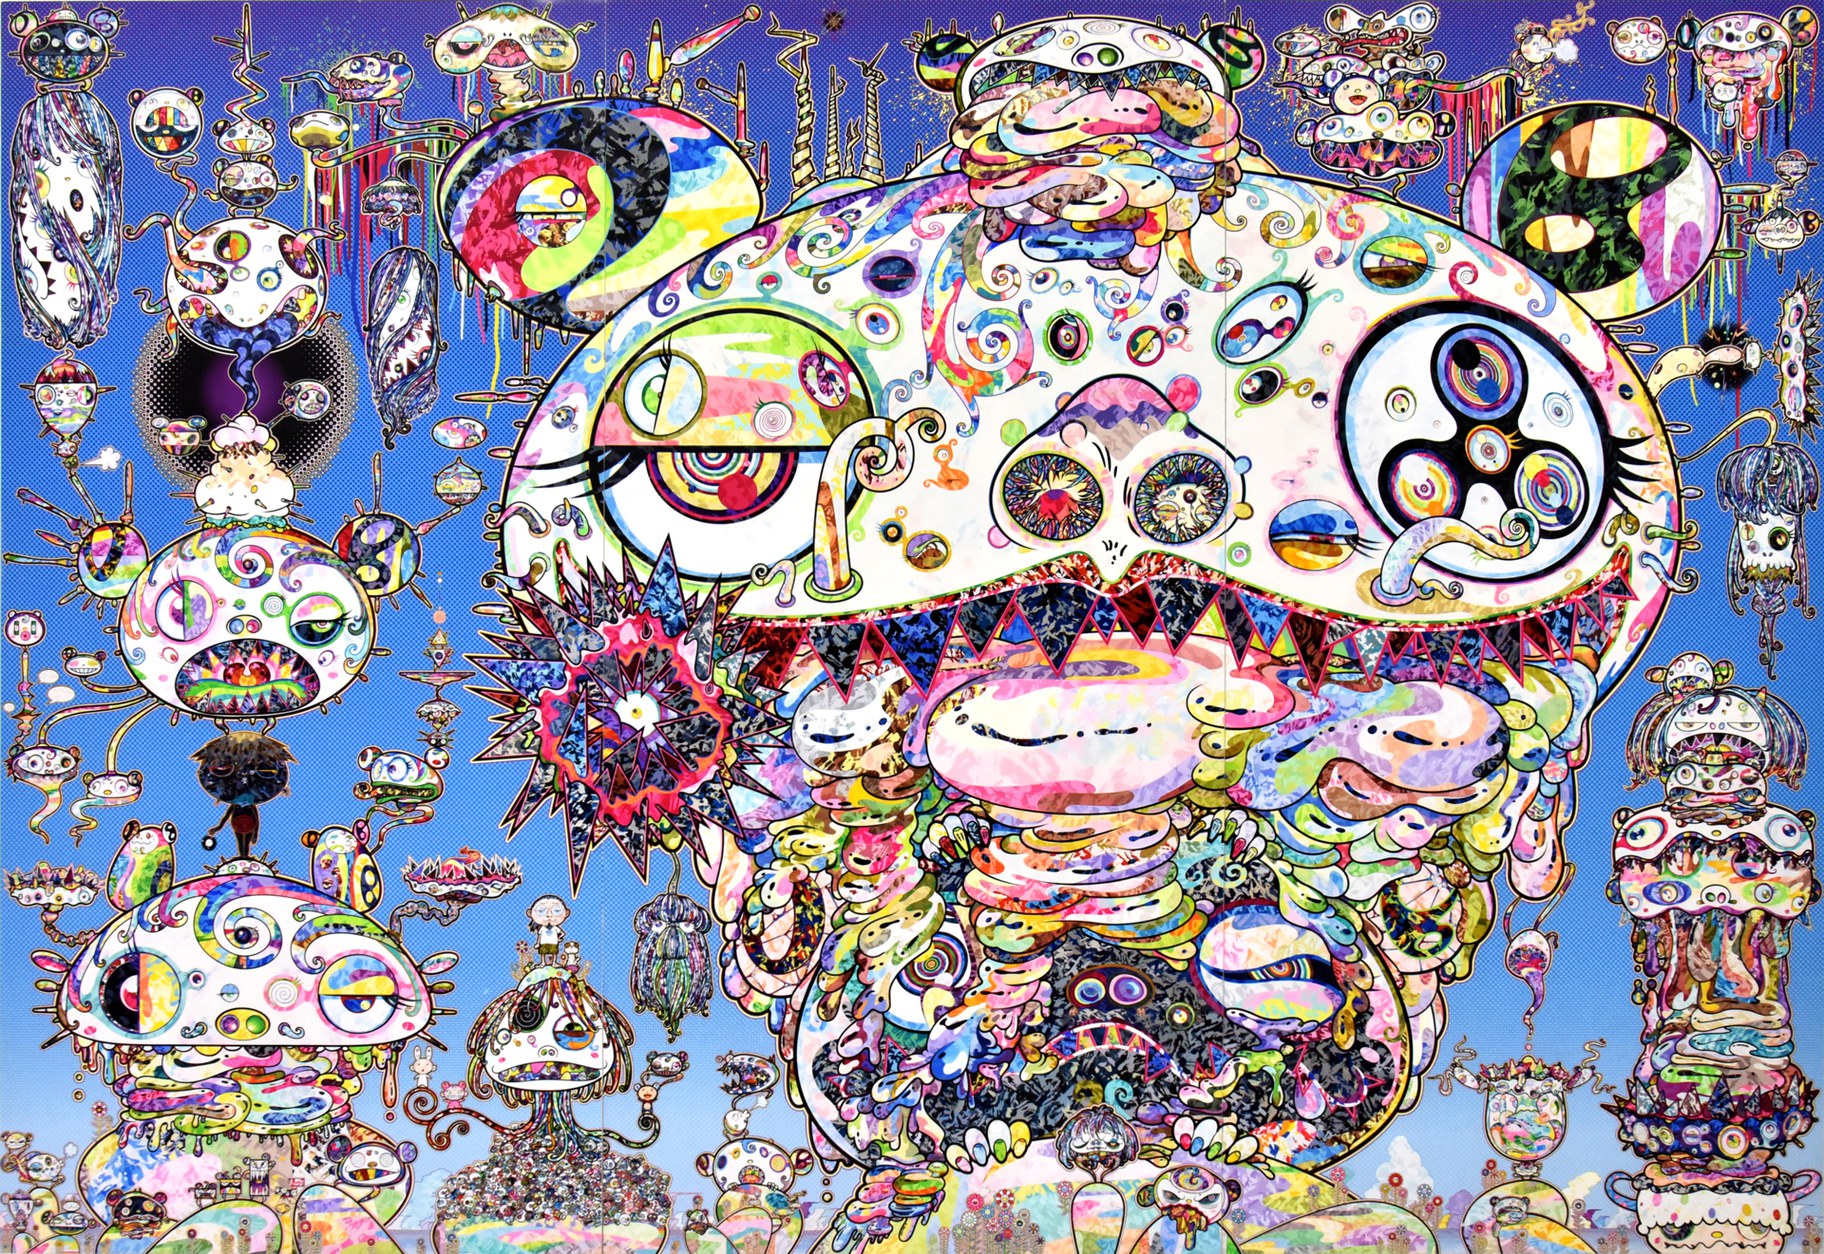 Takashi Murakami on human loss, hiding behind masks, power of NFTs